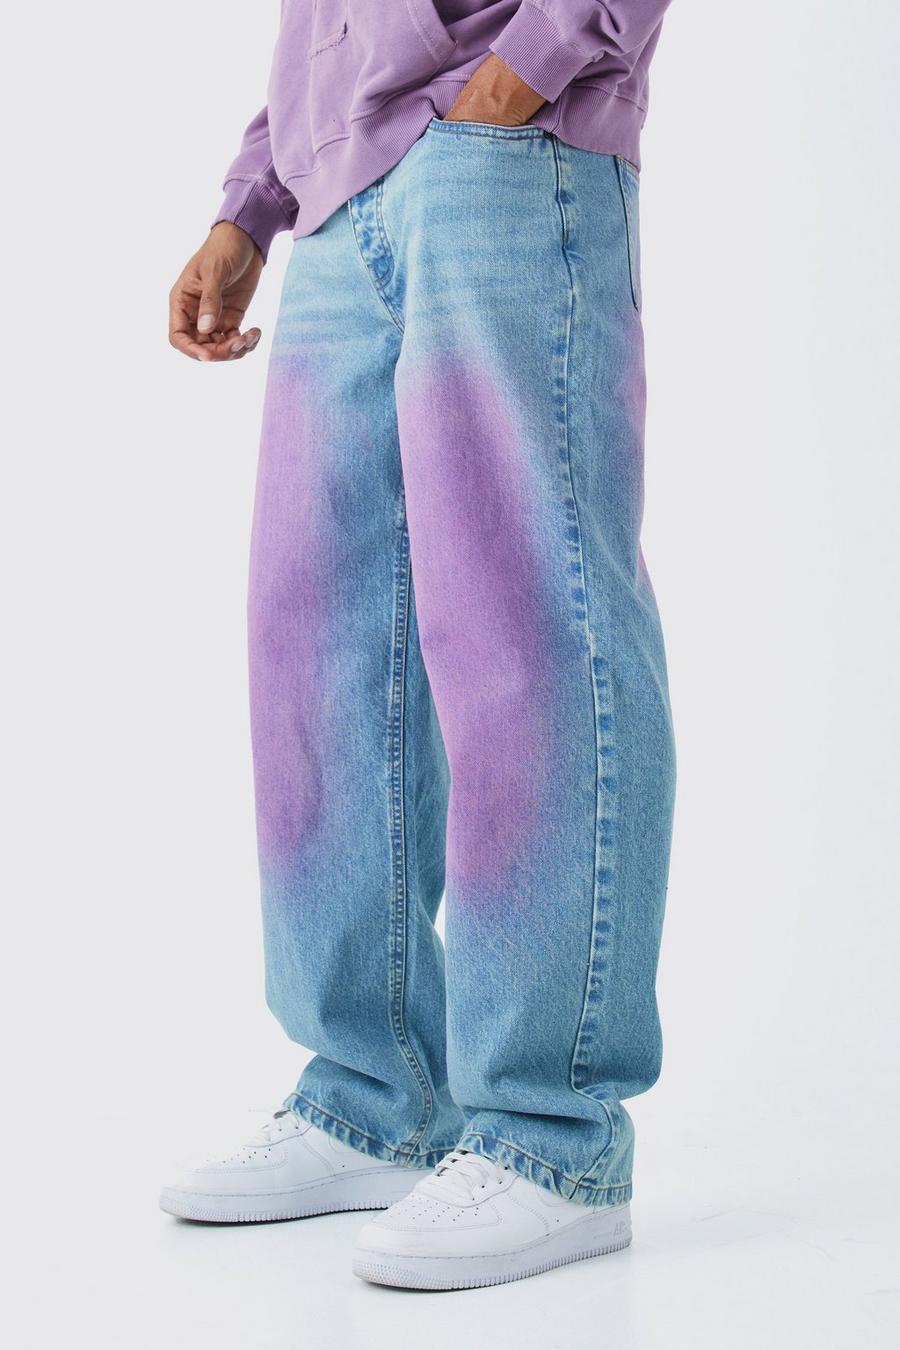 Lockere Jeans mit Pink-Tönung in Antik-Blazer, Antique blue